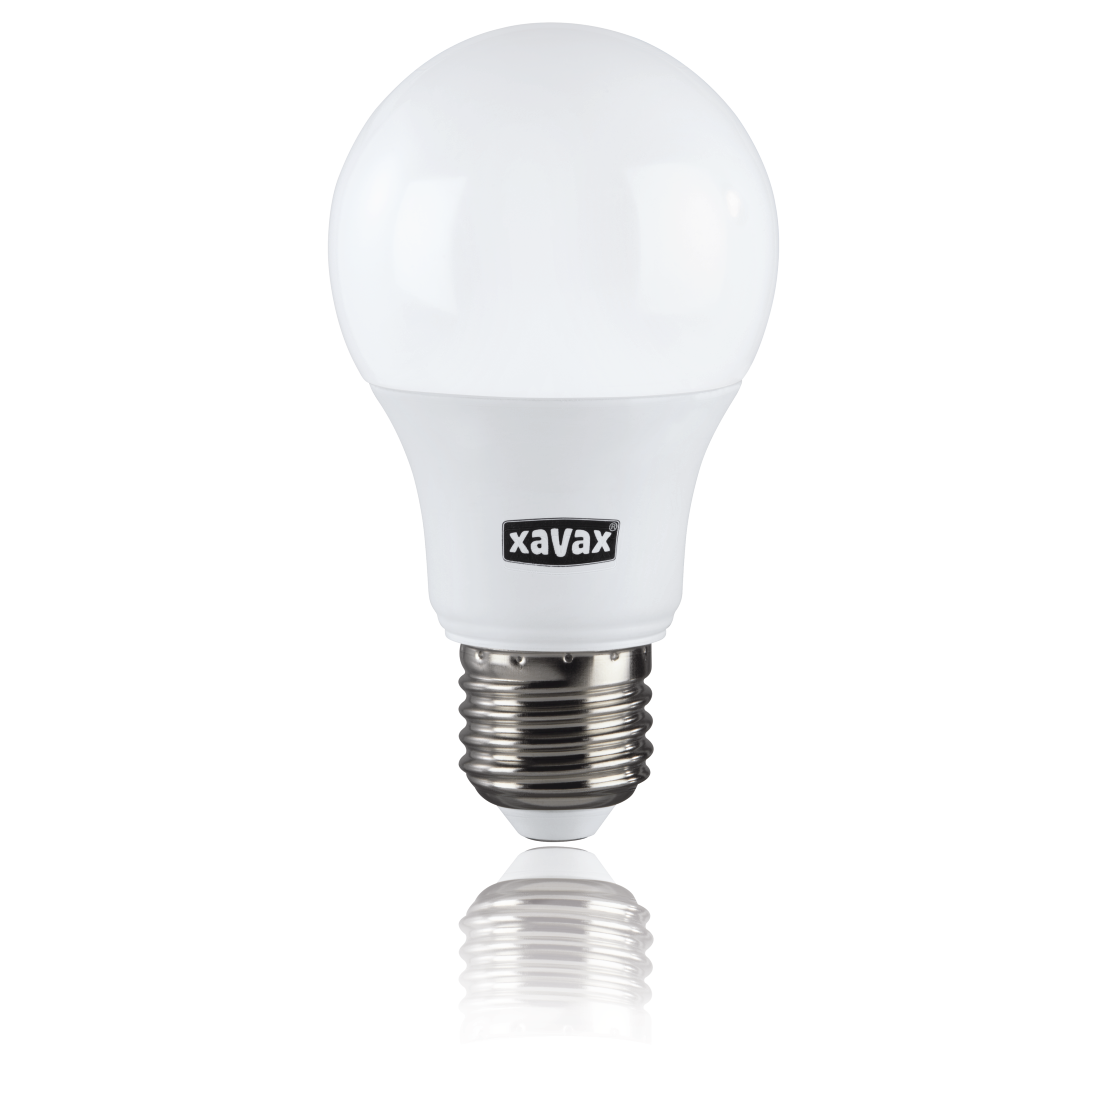 abx2 High-Res Image 2 - Xavax, Ampoule LED, E27, 806 lm rempl. 60W, lampe à incandes., blanc chaud